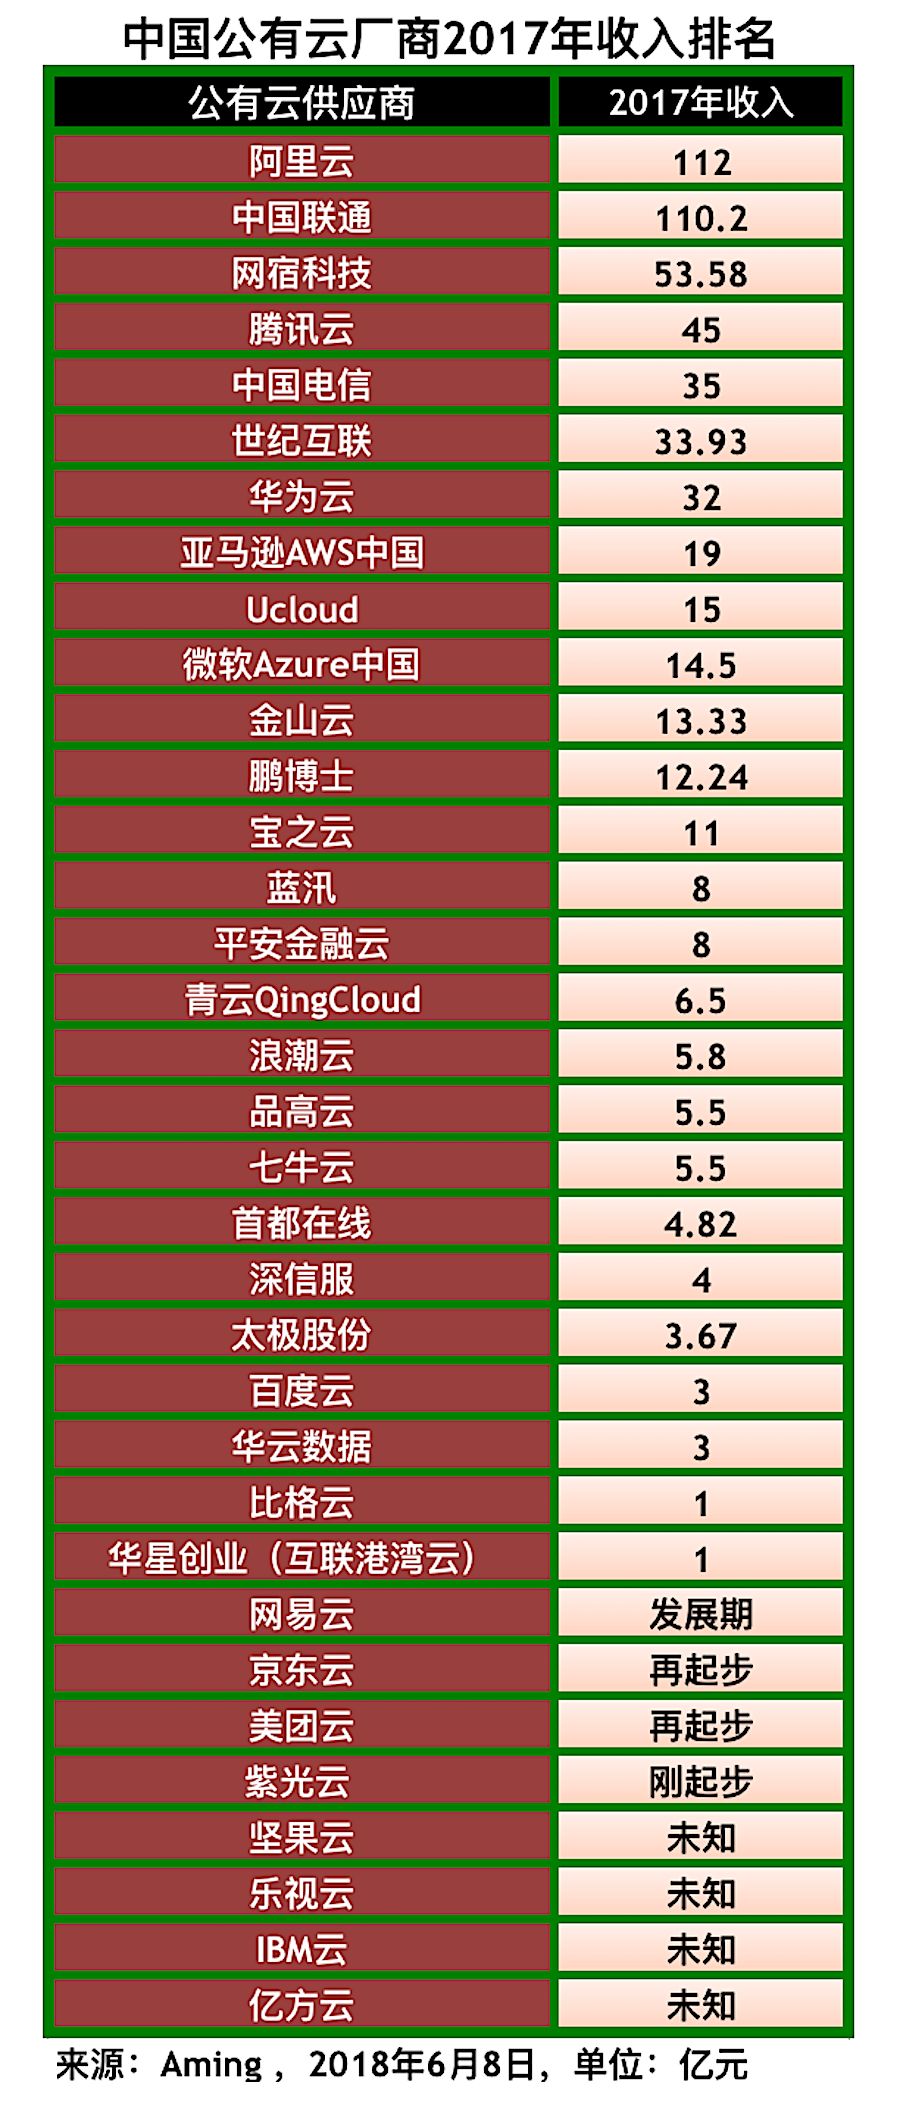 中国 年收入 排行榜_中国明星年收入排行